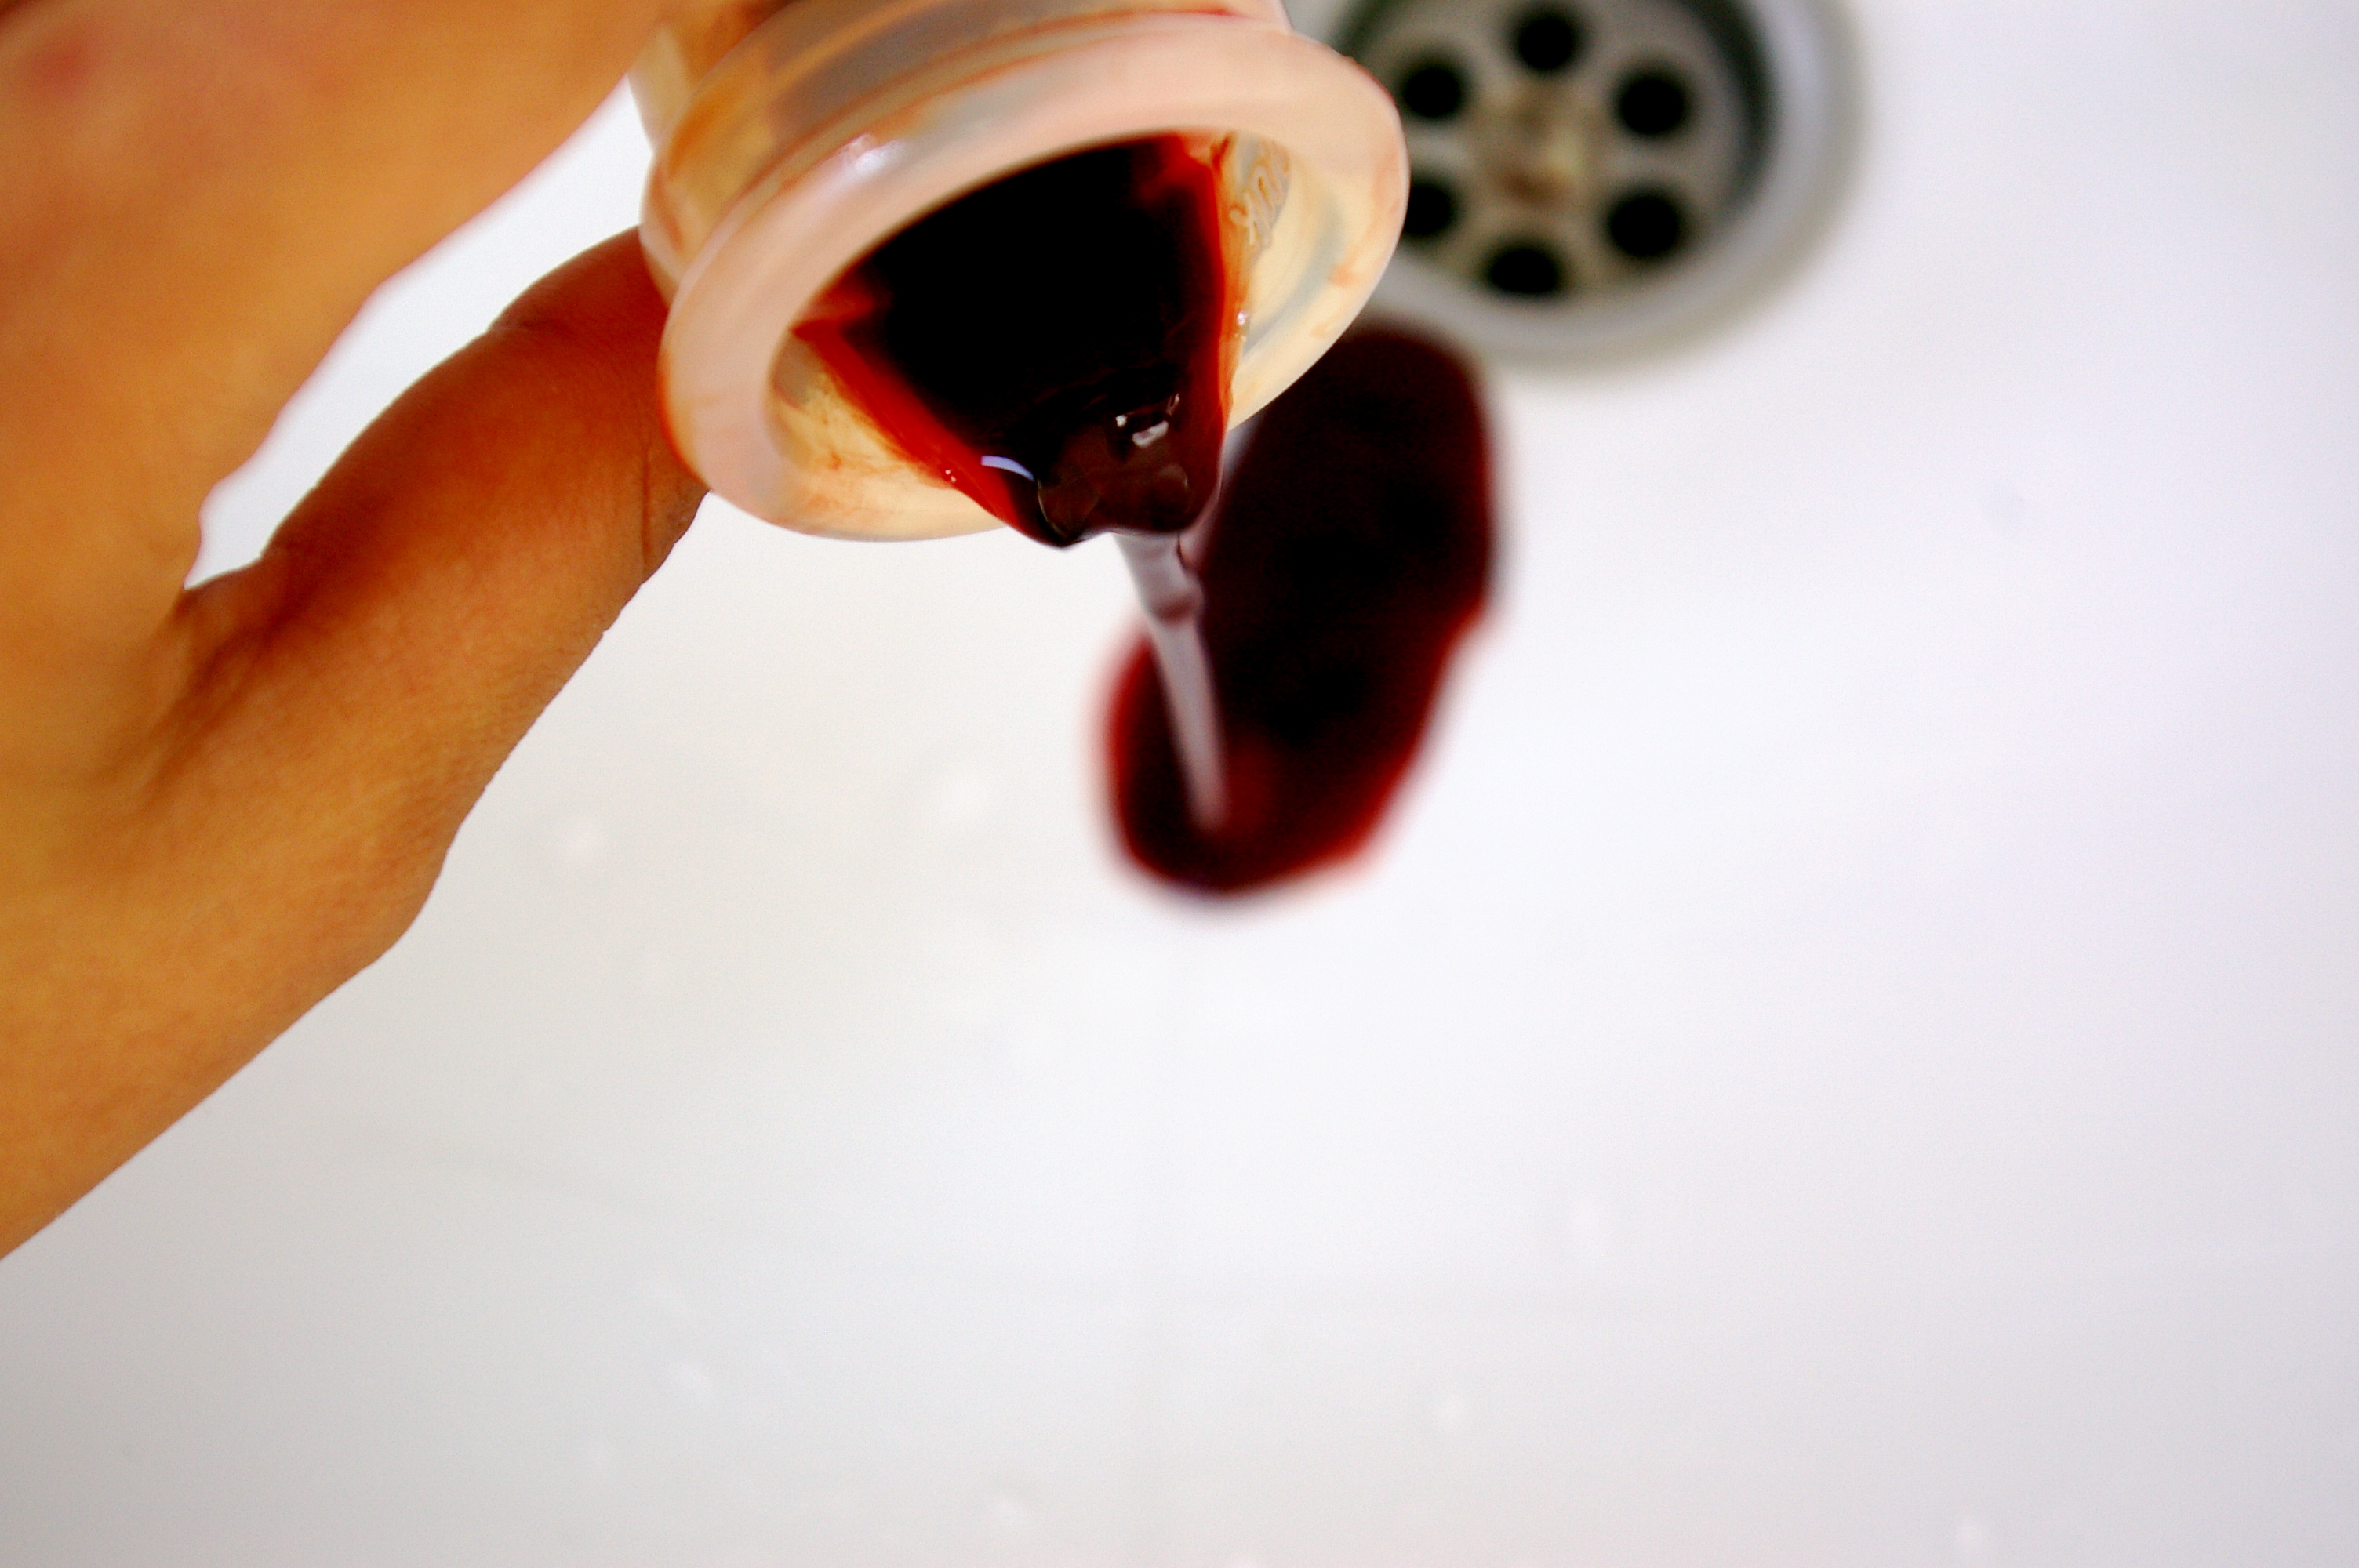 Менструационного чаша с кровью